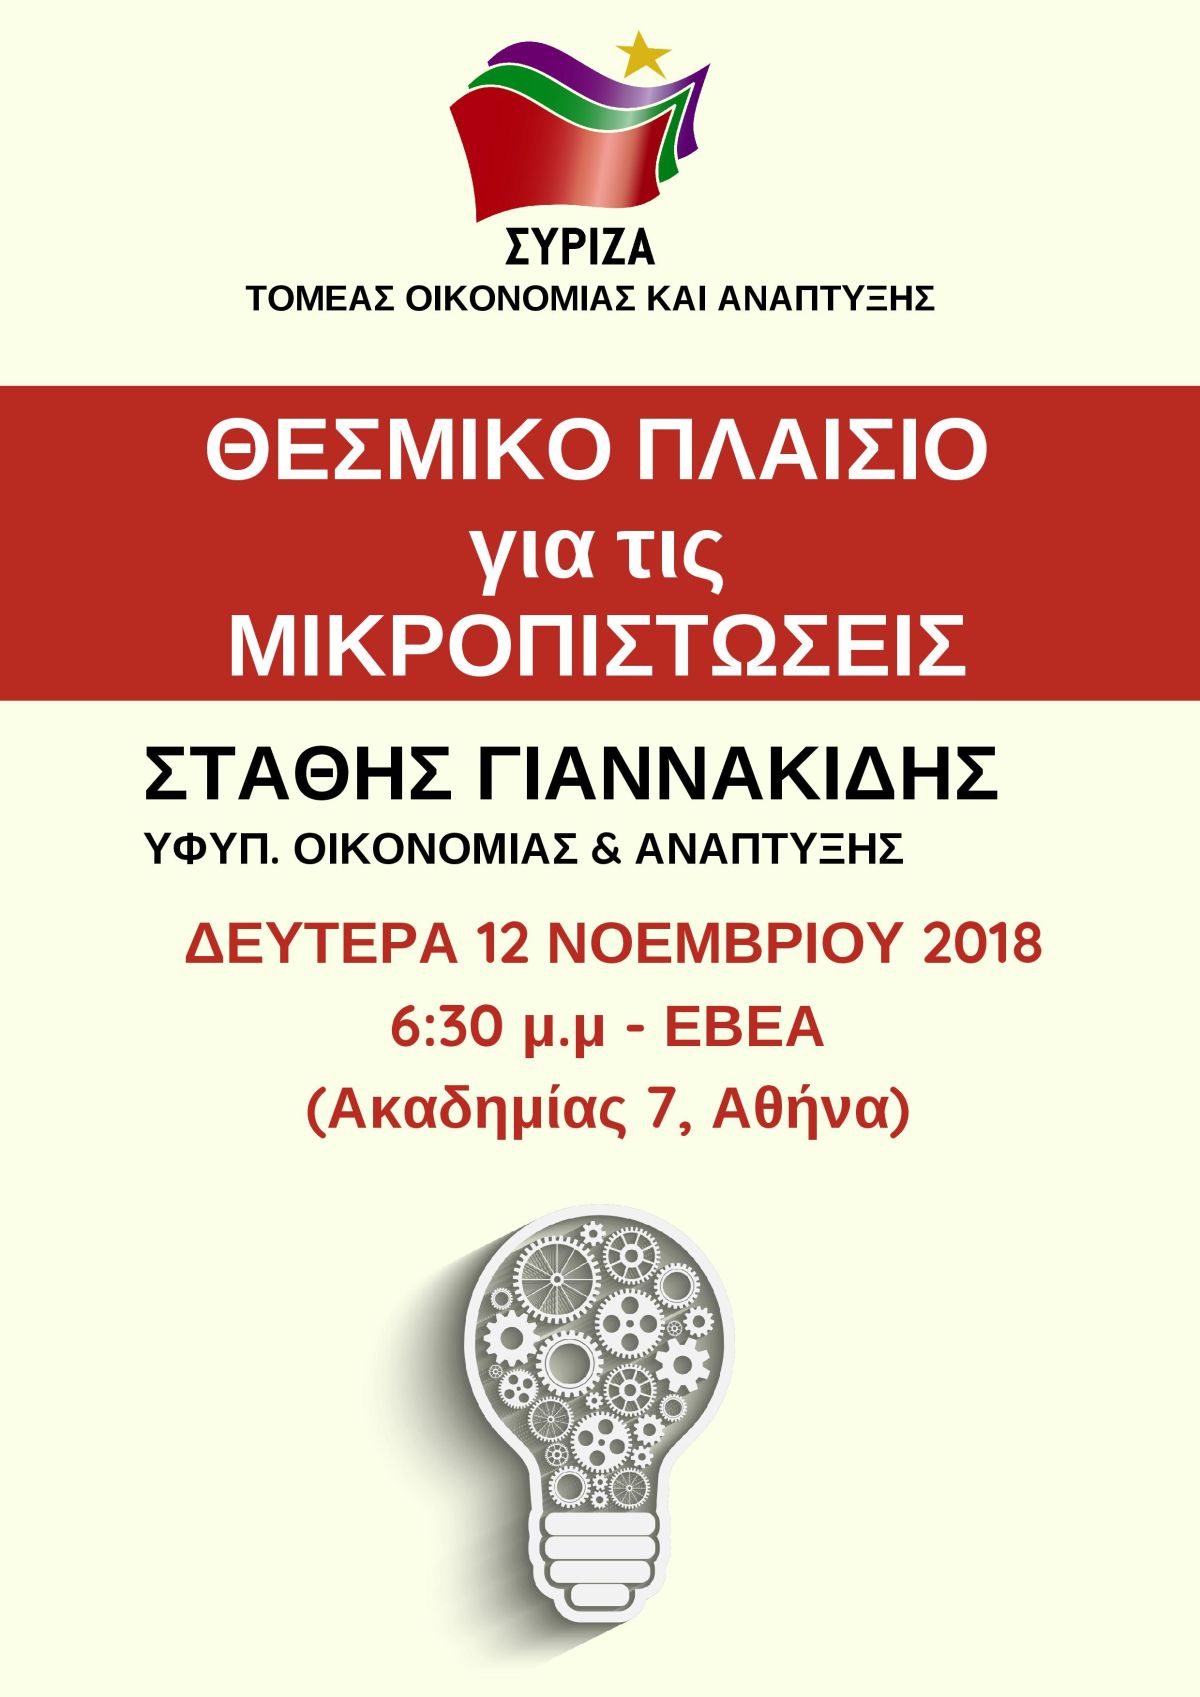 Εκδήλωση του Τομέα Οικονομίας και Ανάπτυξης του ΣΥΡΙΖΑ, με ομιλητή τον υφυπουργό Οικονομίας και Ανάπτυξης Στάθη Γιαννακίδη